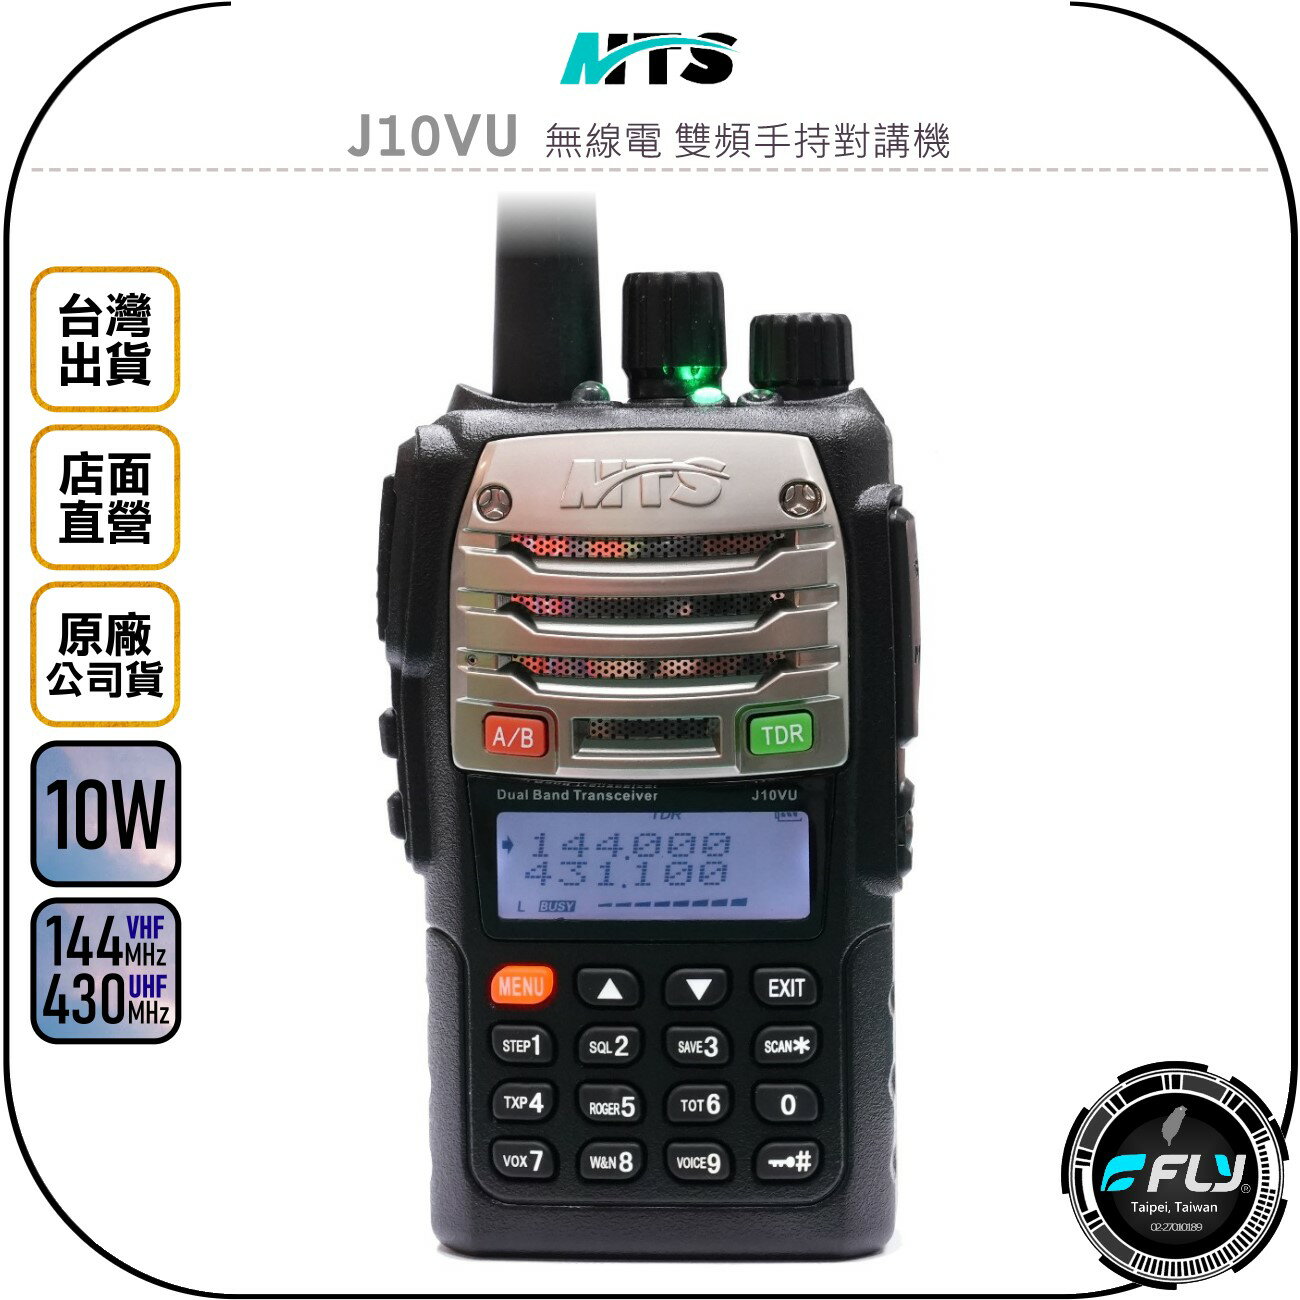 《飛翔無線3C》MTS J10VU 無線電 雙頻手持對講機◉公司貨◉10W大功率◉雙顯雙待◉傳統機板◉跟車聯繫